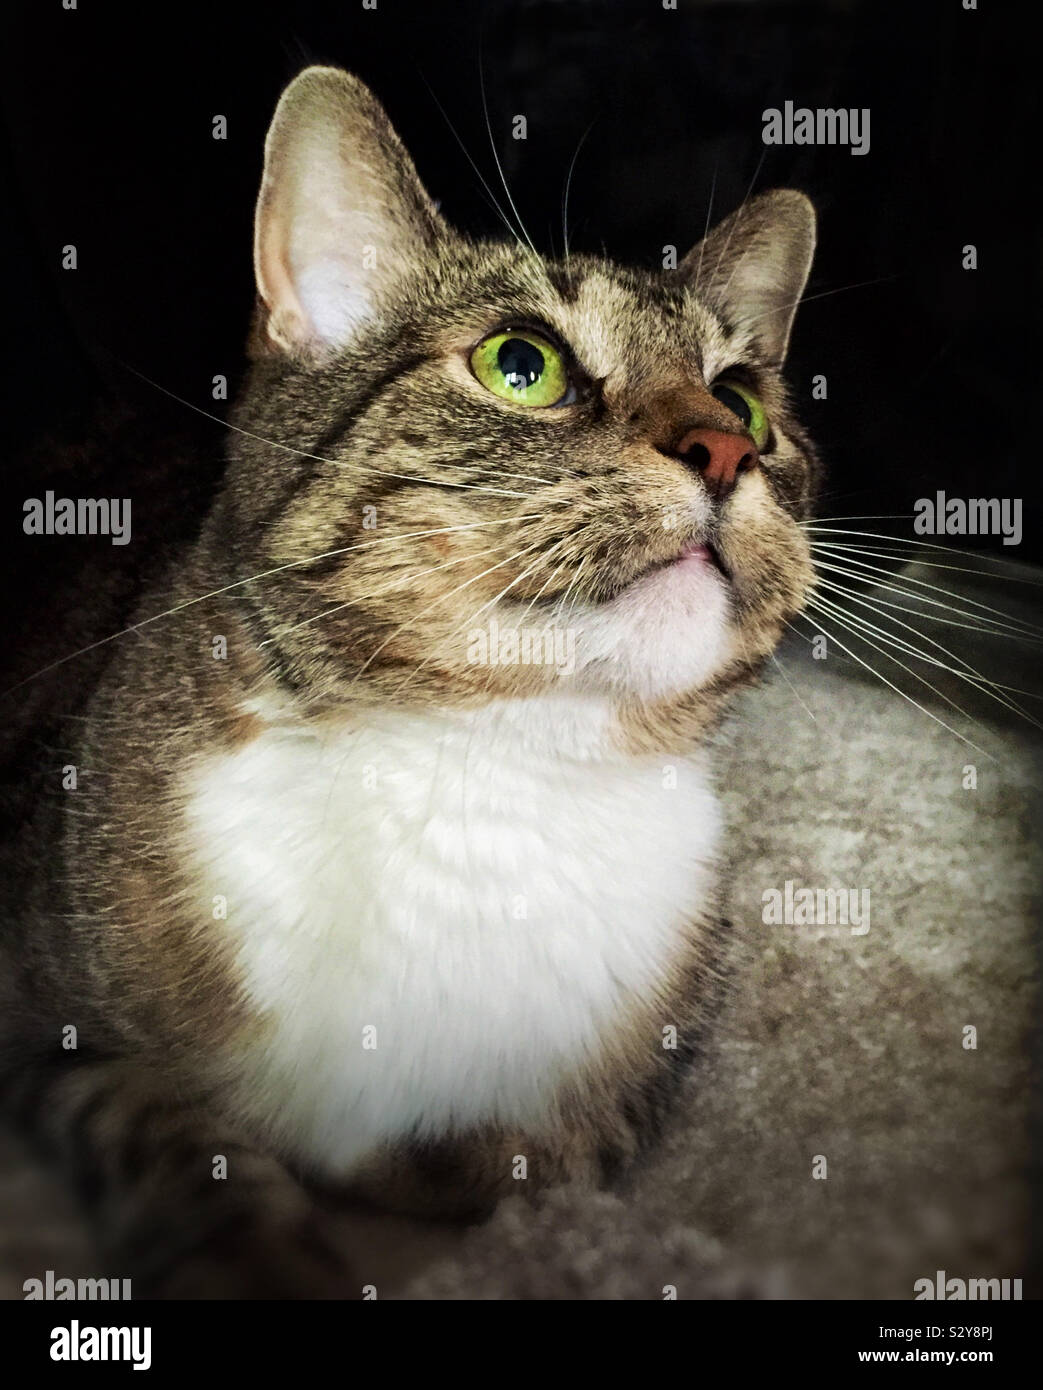 Eine weibliche kurze Haare braune und weiße tabby Katze mit grünen Augen ist auf der Suche nach oben, wie sie Uhren ein kitty Spielzeug. Stockfoto